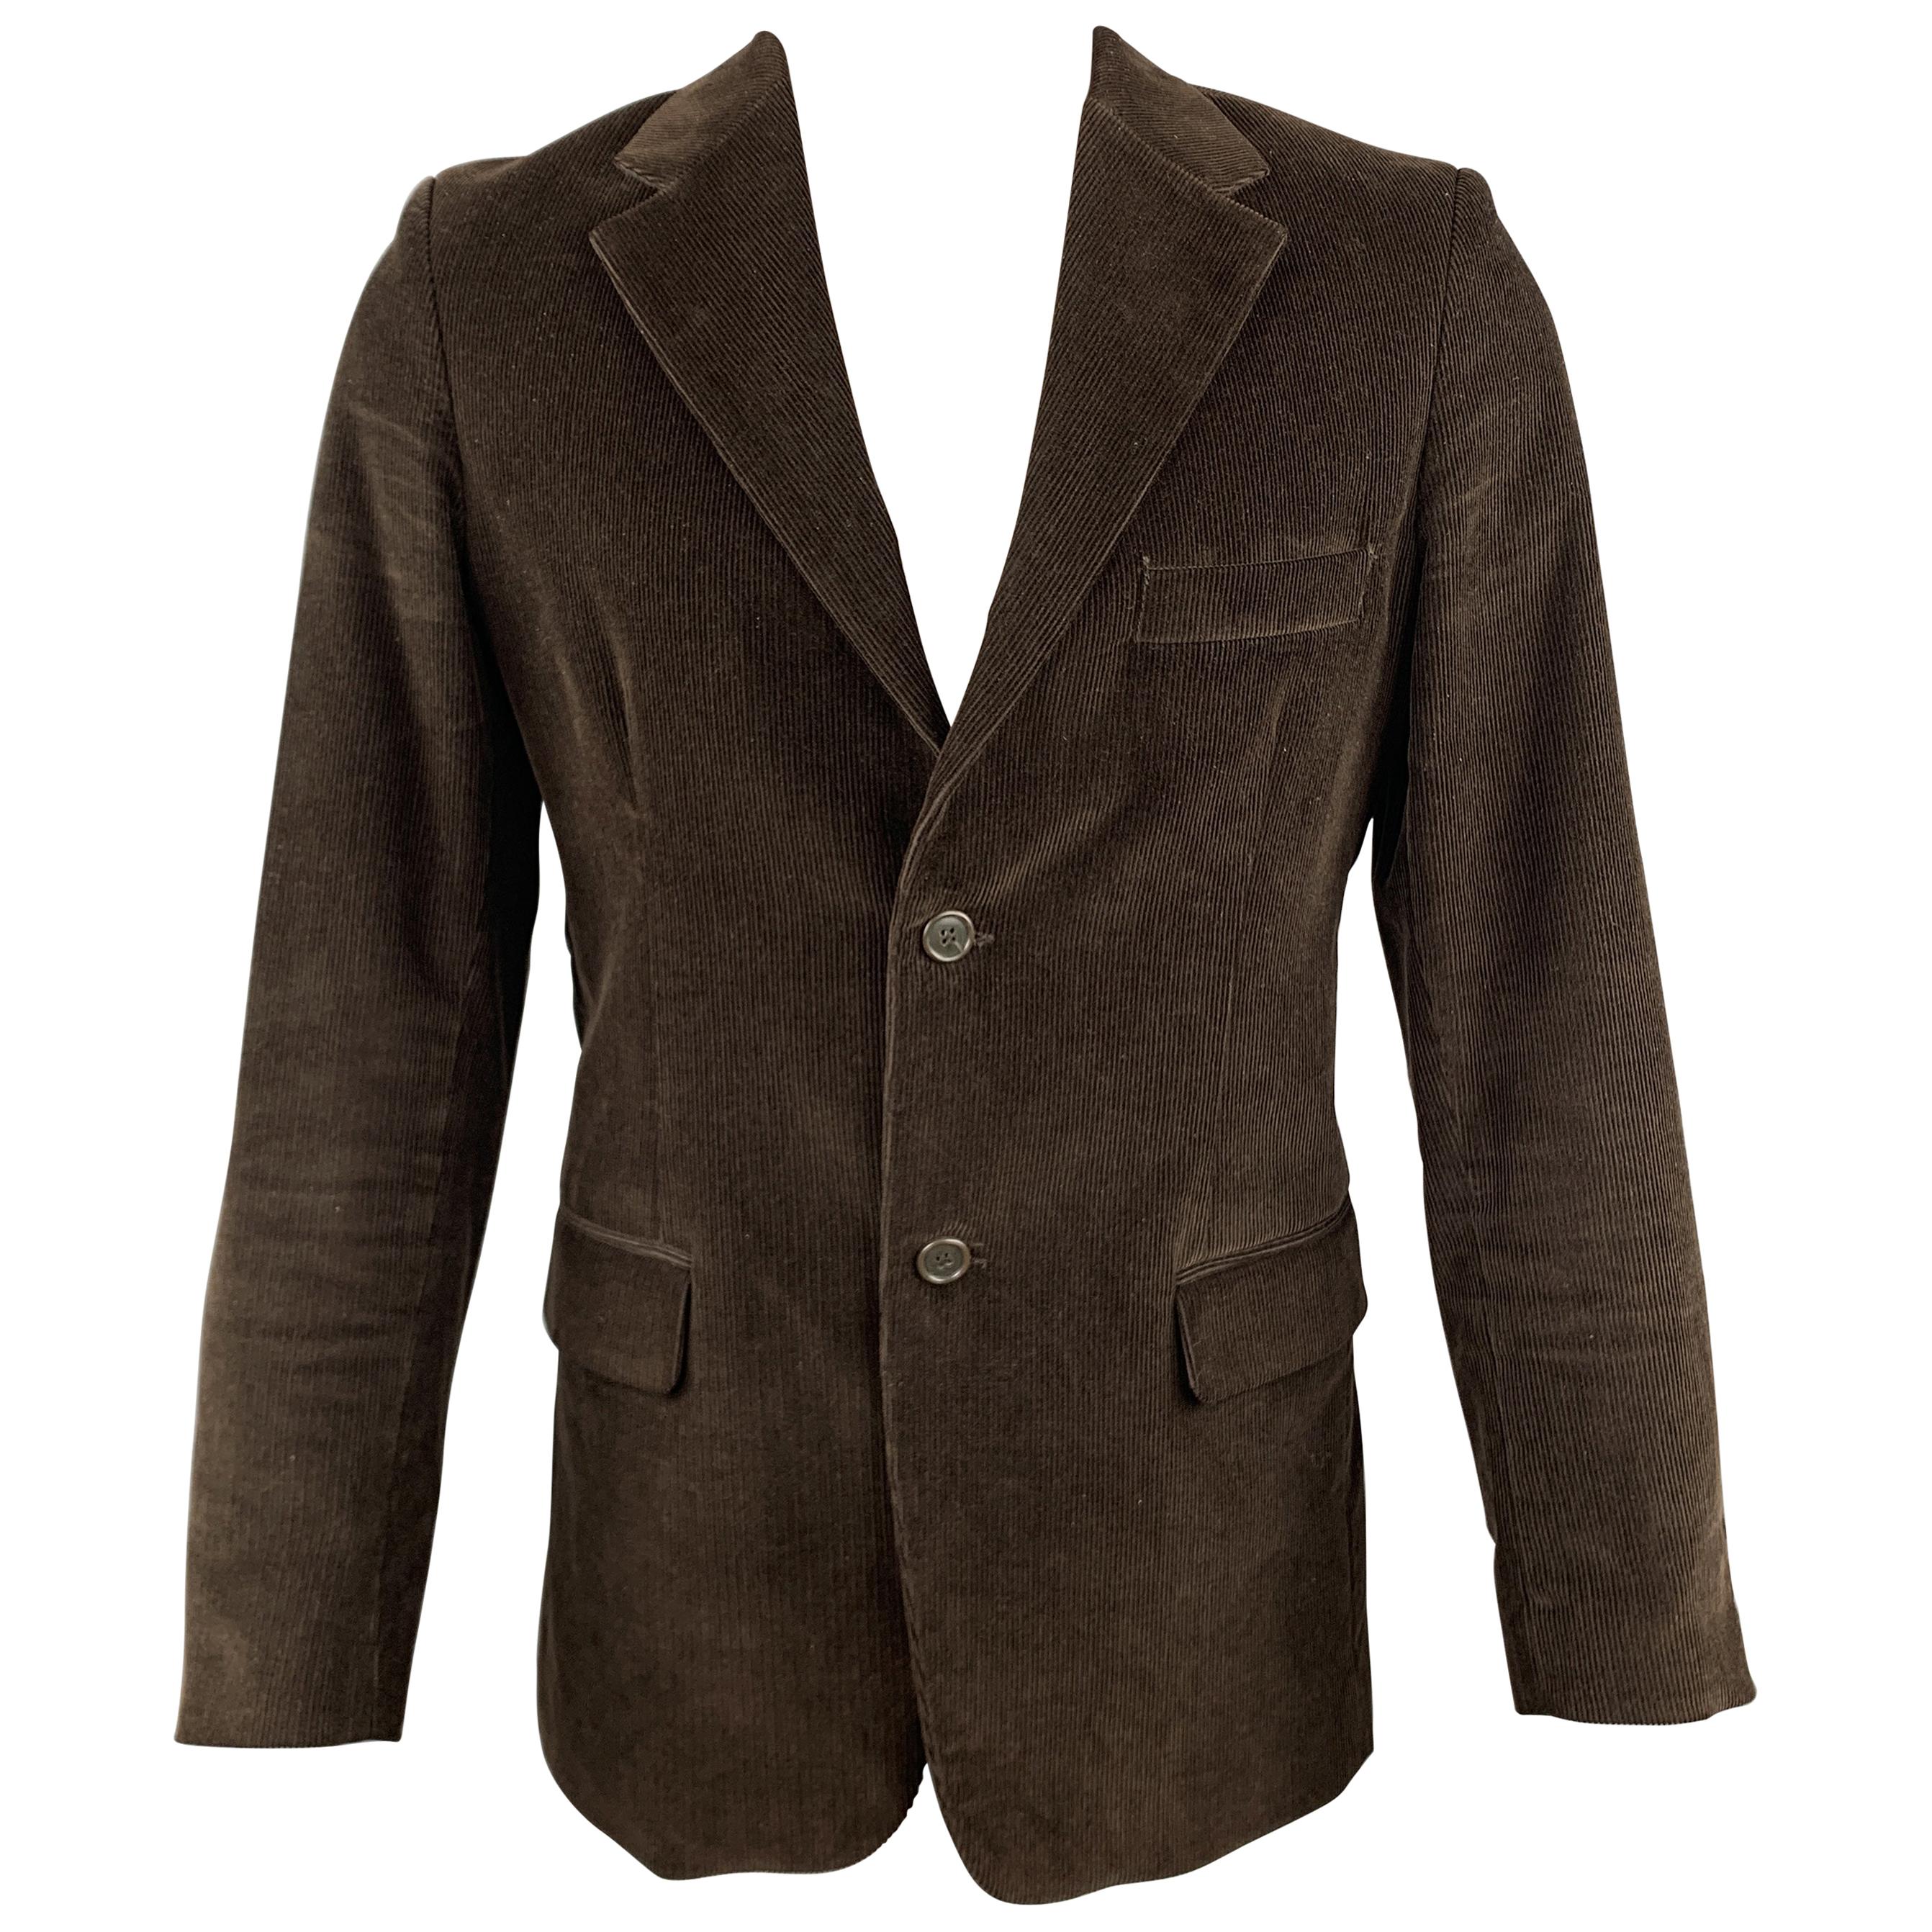 BARNEY'S CO-OP Size 36 Black Corduroy Cotton Notch Lapel Sport Coat